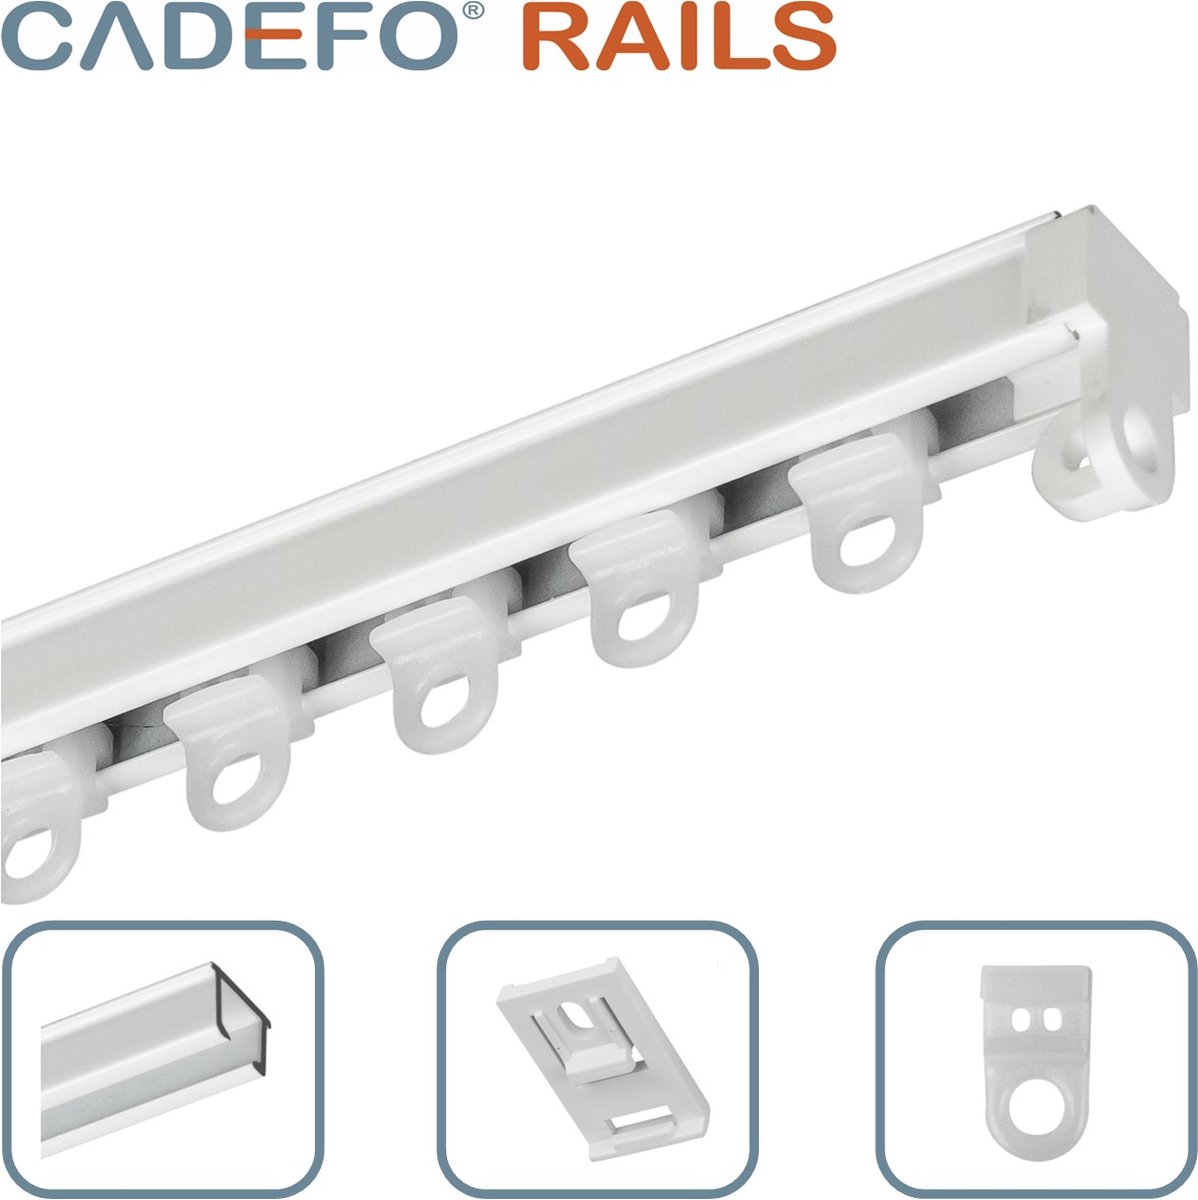 CADEFO RAILS (251 - 300 cm) Gordijnrails - Compleet op maat! - UIT 1 STUK - Leverbaar tot 6 meter - Plafondbevestiging - Lengte 287 cm